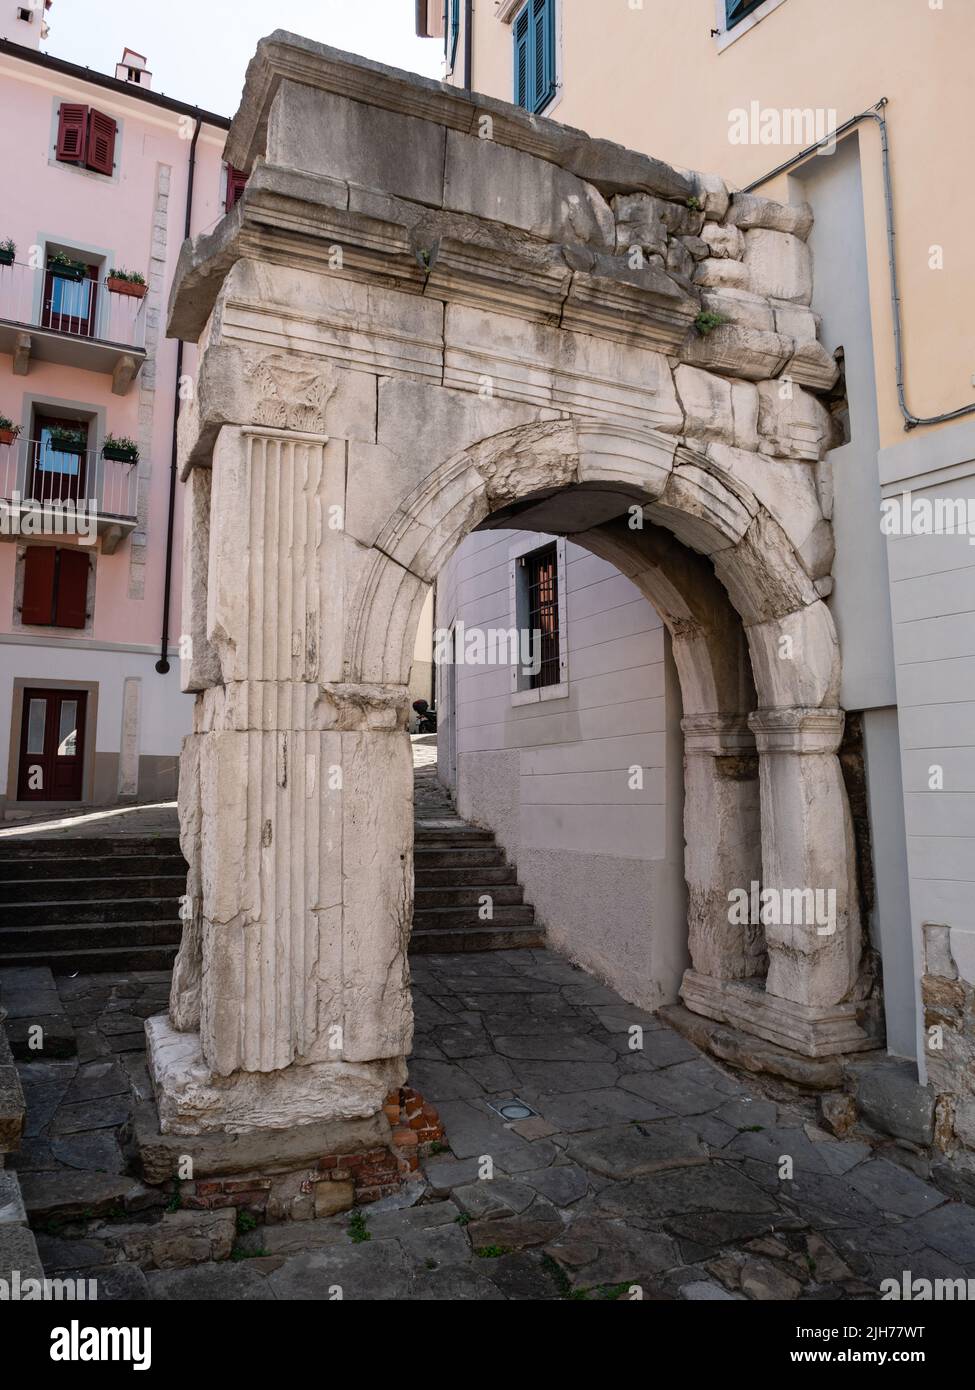 Arco di Riccardo oder Richard's Arch, ein römischer Triumphbogen in Triest, Italien Stockfoto